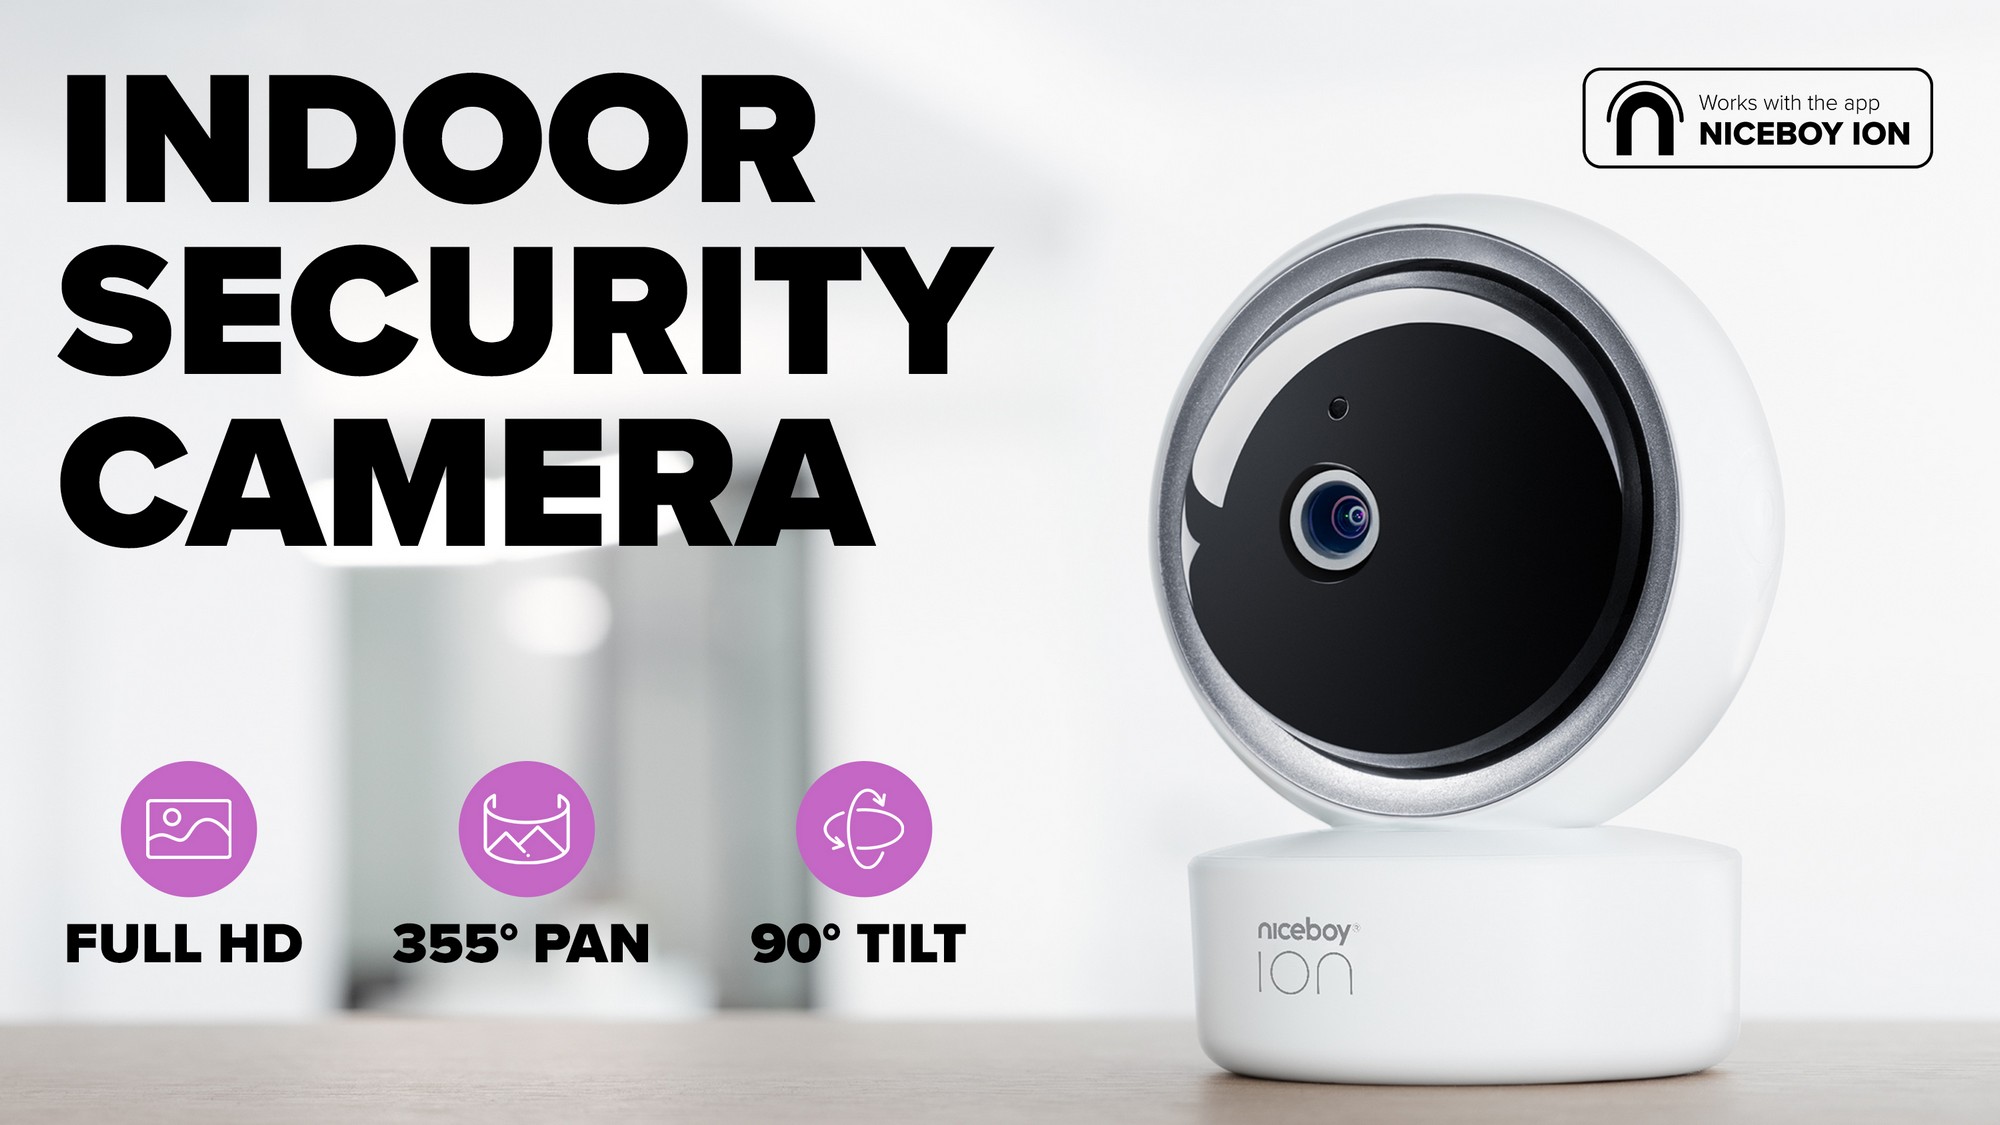 Bezpečnostná vnútorná kamera Niceboy ION Home Security Camera s Full HD rozlíšením a širokým záberom